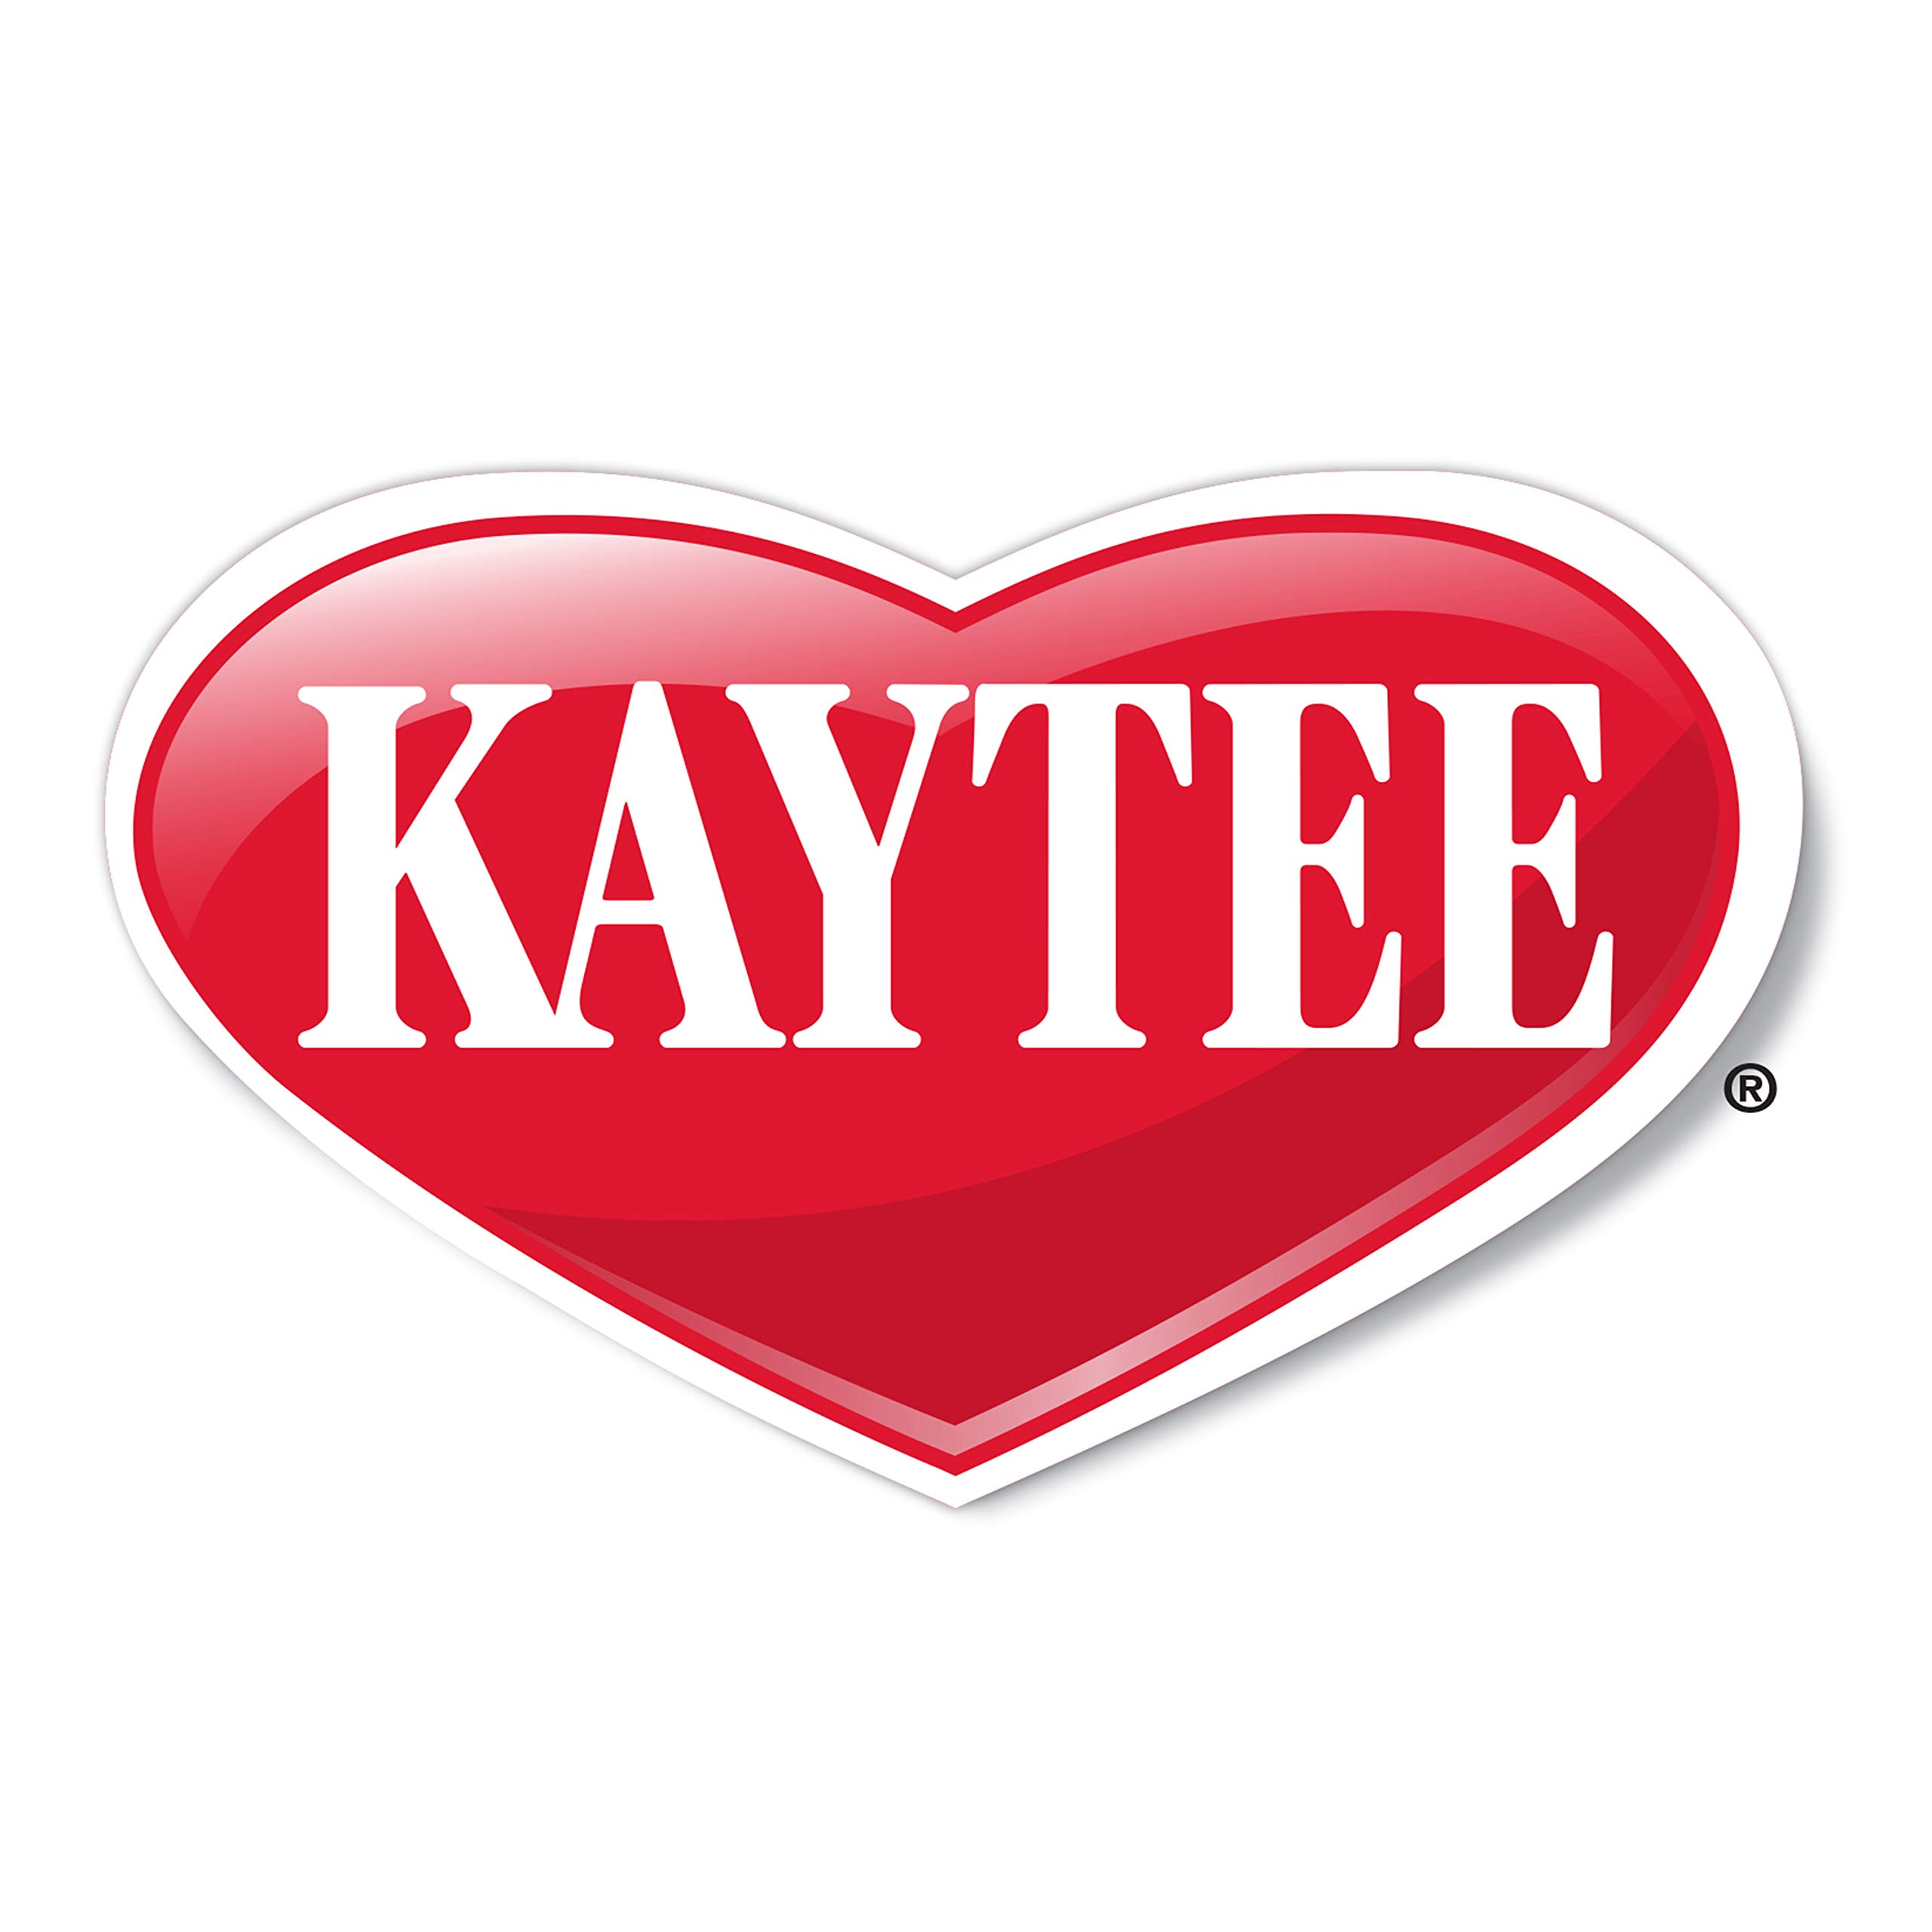 kaytee logo